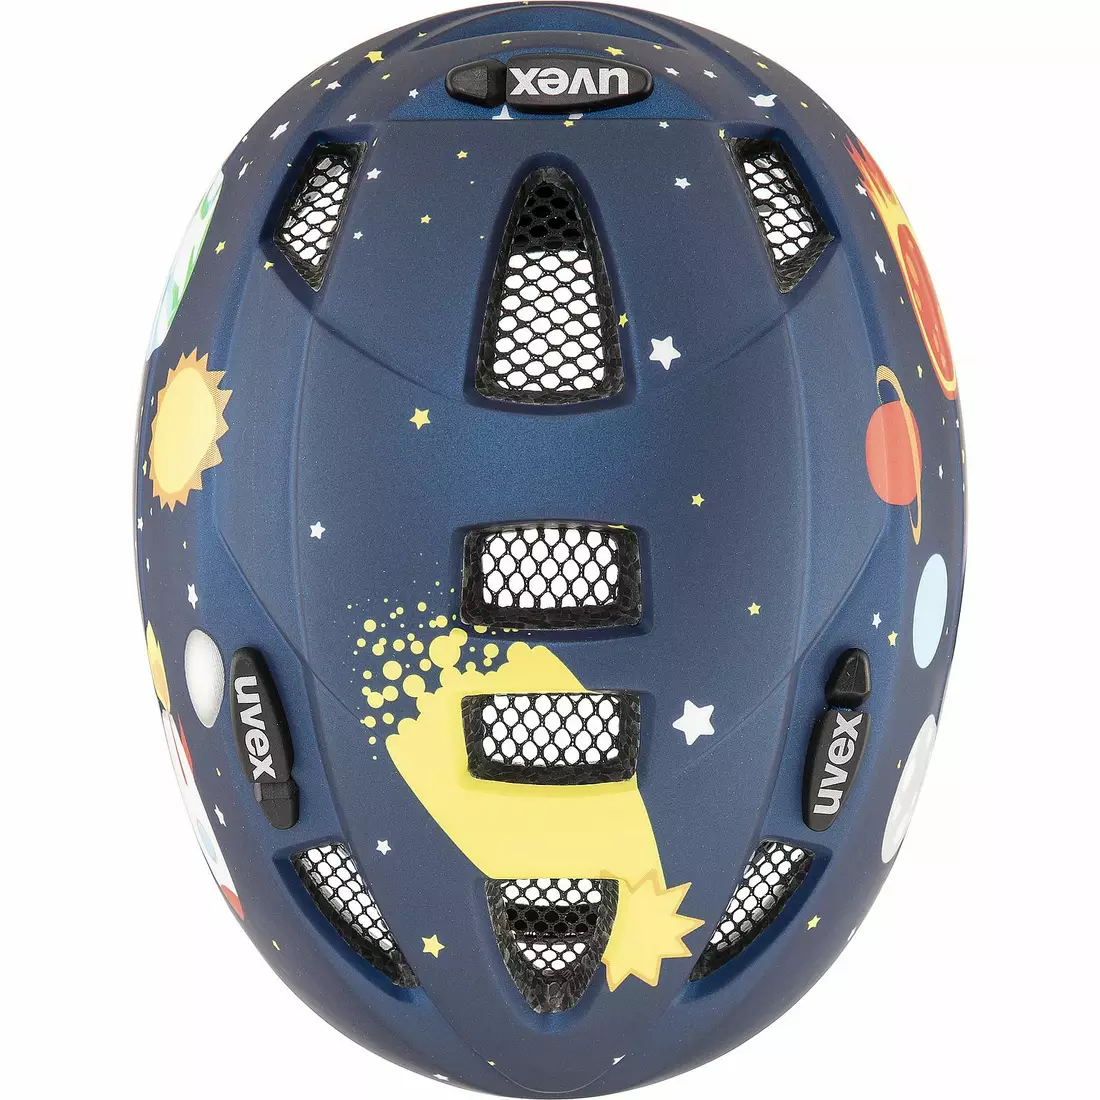 UVEX children's bicycle helmet Kid 2 CC dark blue rocket matt